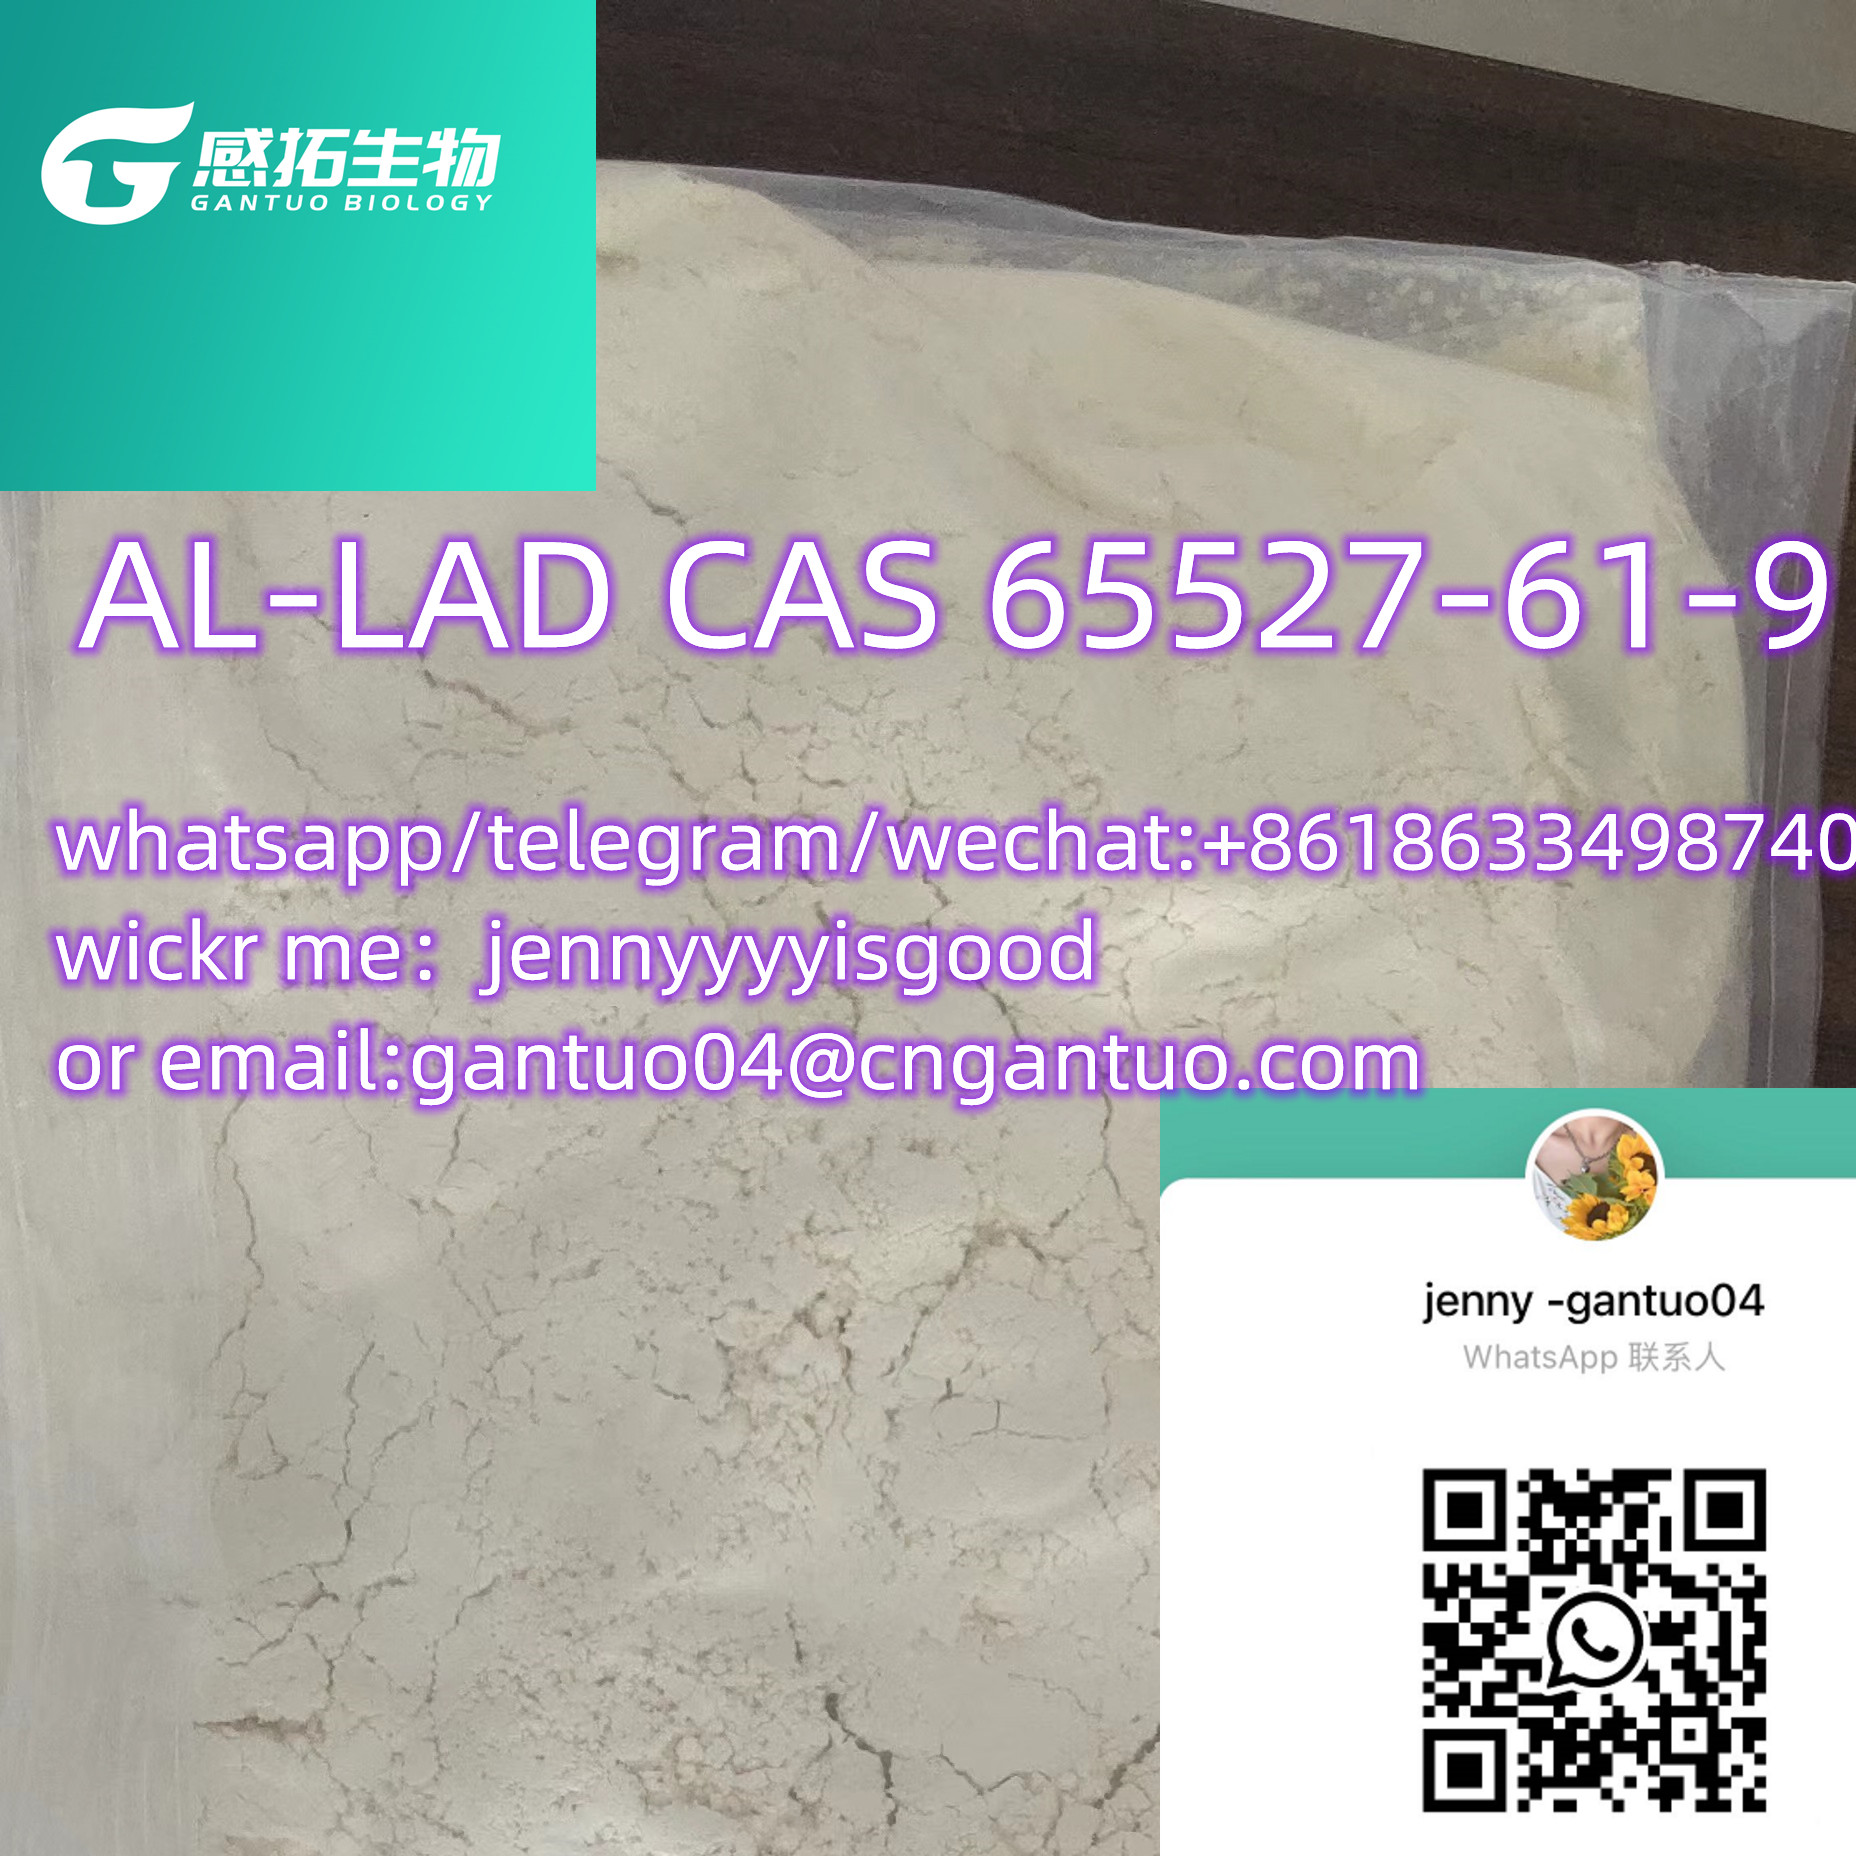 AL-LAD CAS 65527-61-9